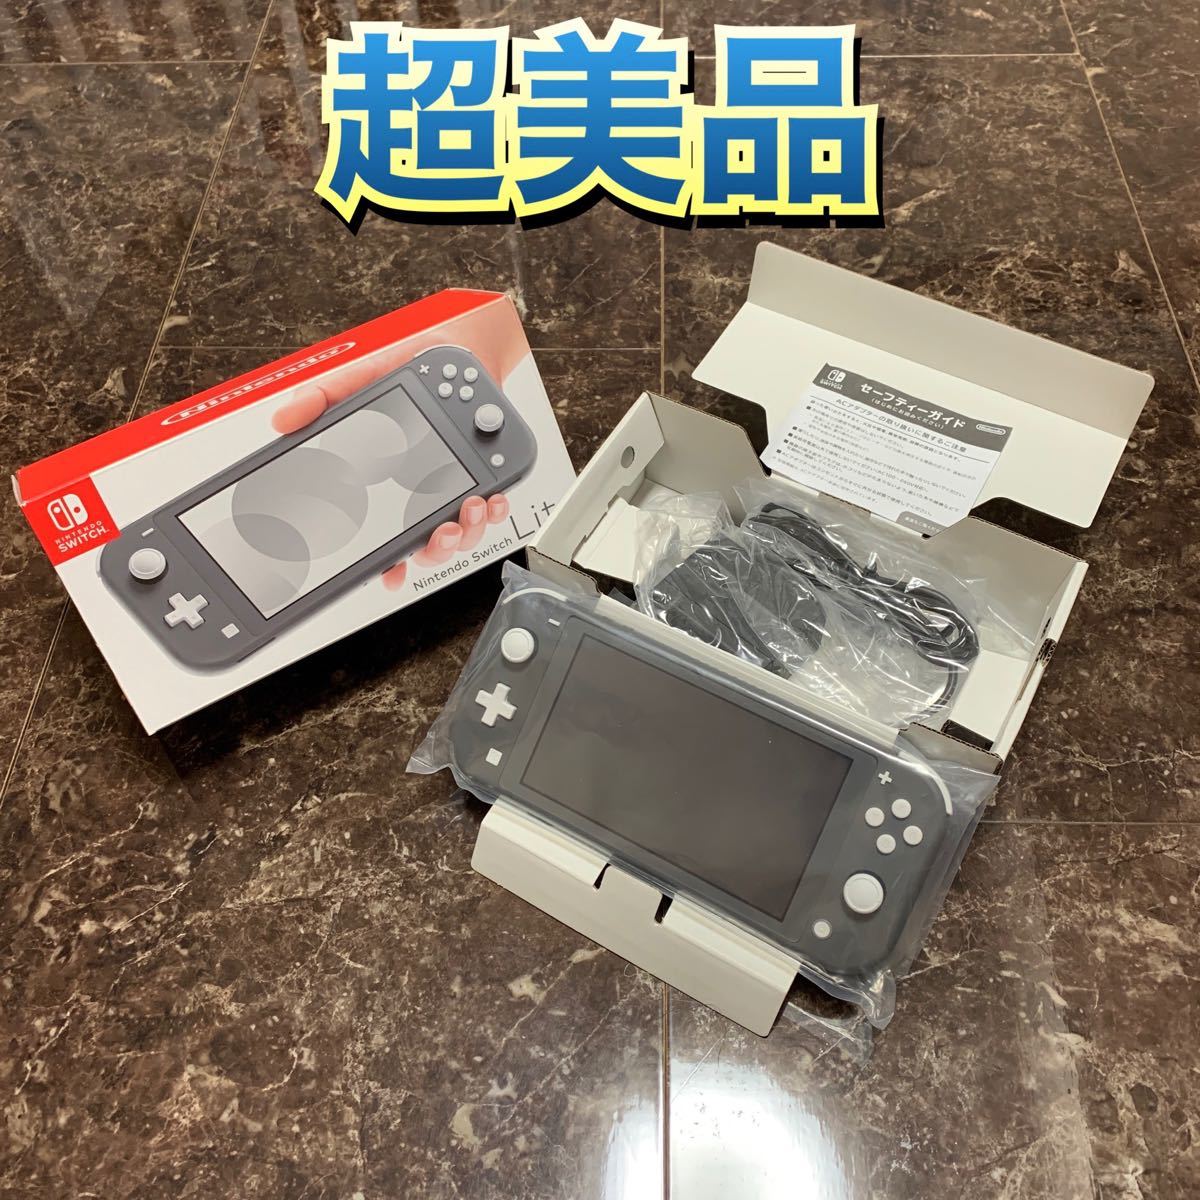 テレビ/映像機器 その他 Nintendo Switch Lite グレー 本体 超美品 ニンテンドースイッチライト 中古